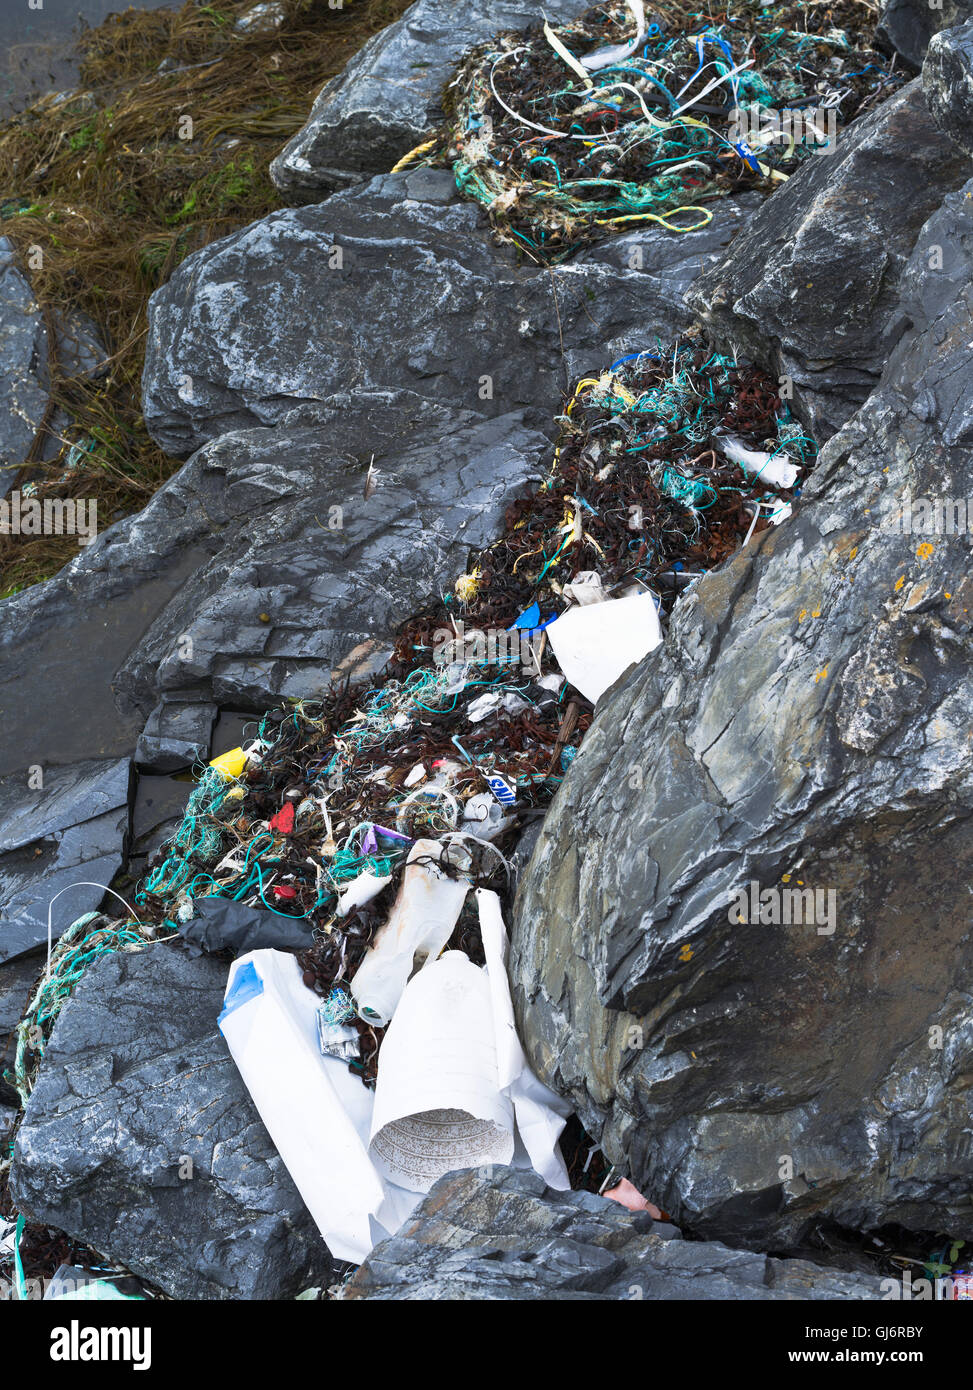 dh Jetsam Shore déchets D'ENVIRONNEMENT de déchets Royaume-Uni ECOSSE plastique flotsam délavé à terre sur les rochers de bord de mer litière de déchets de mer de plage Banque D'Images